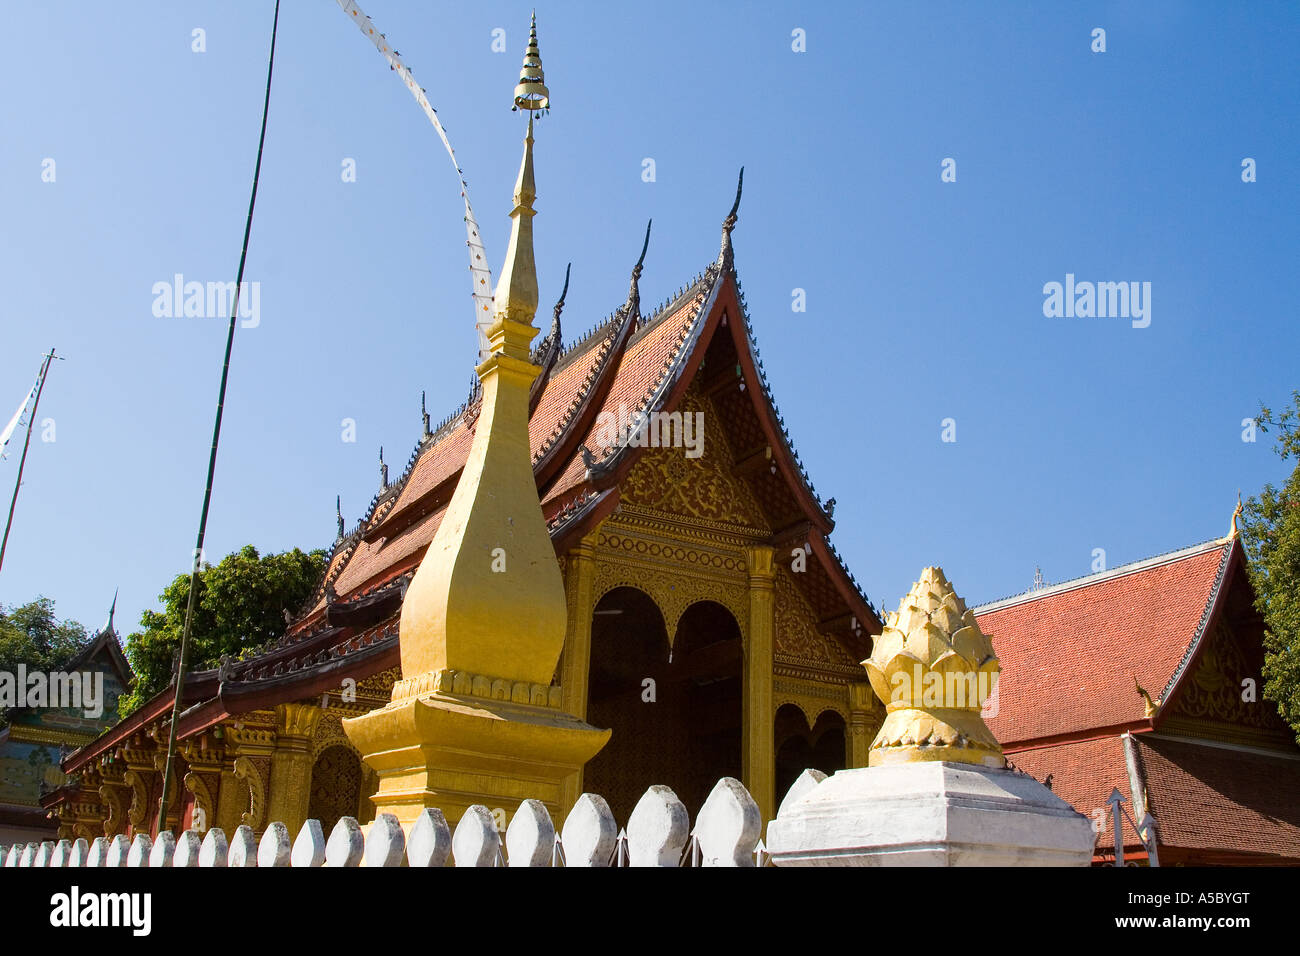 Temple at Wat Saen Vat Sene Luang Prabang Laos Stock Photo